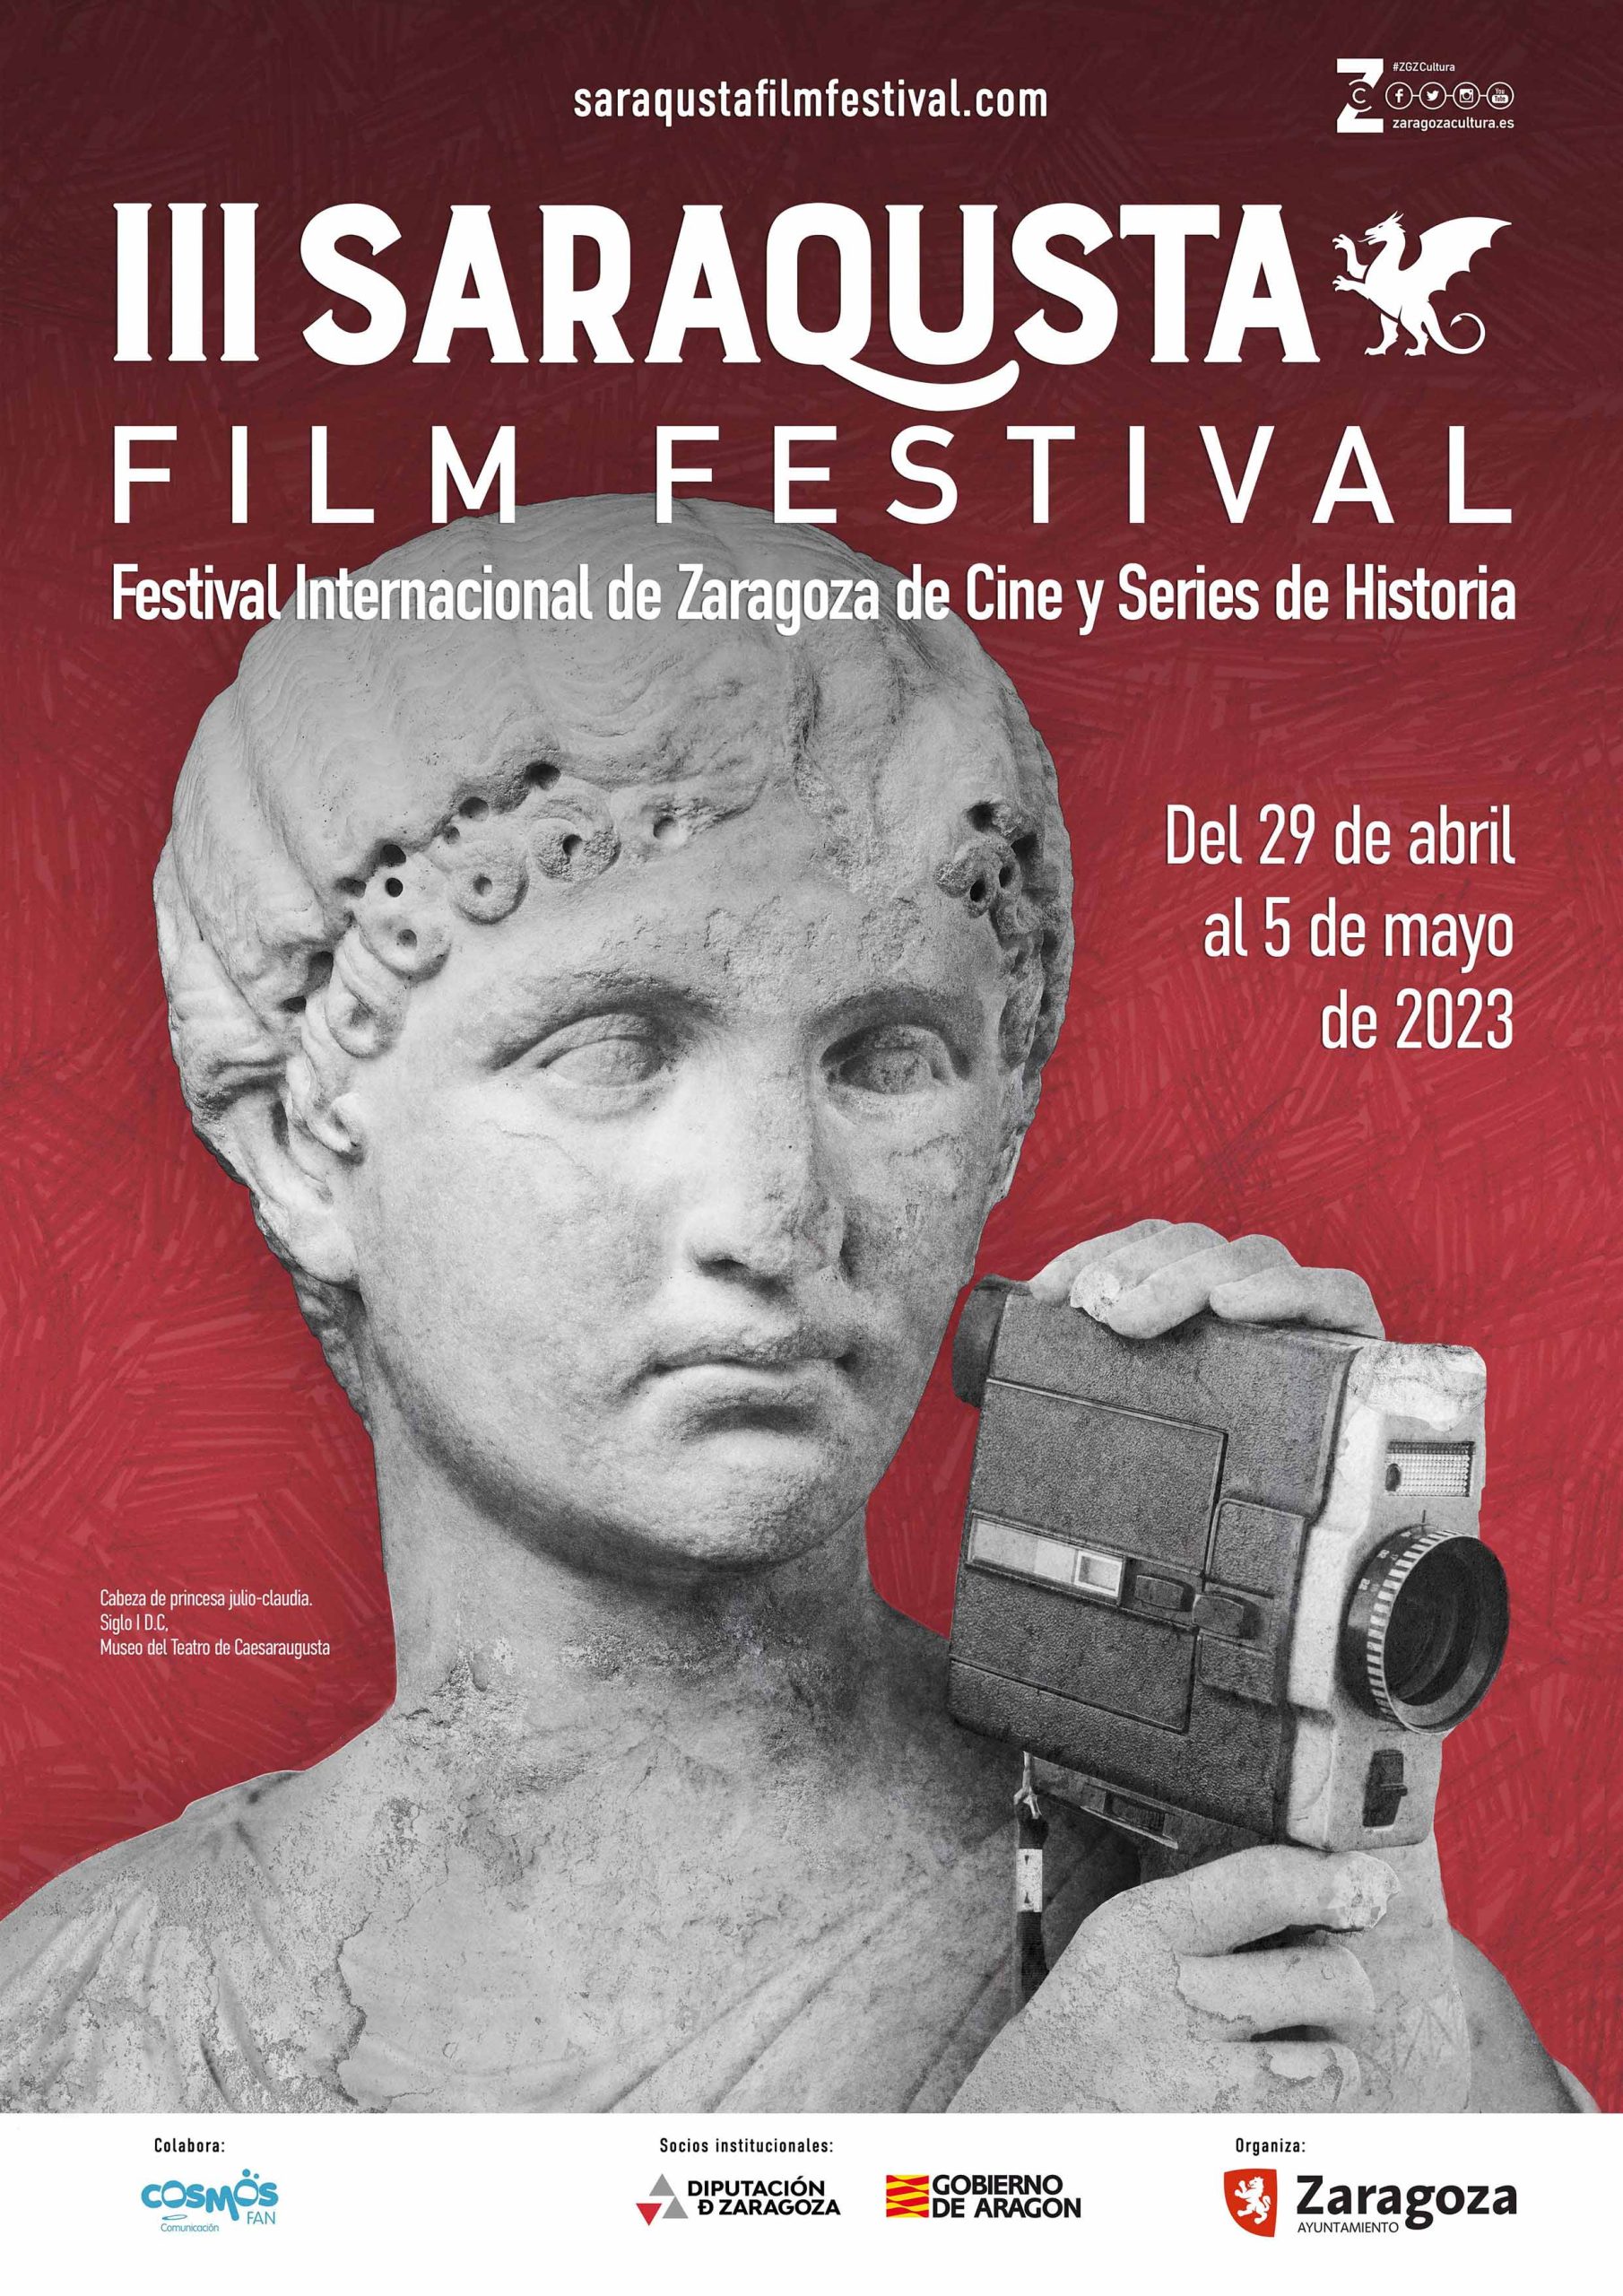 Saraqusta Film Festival